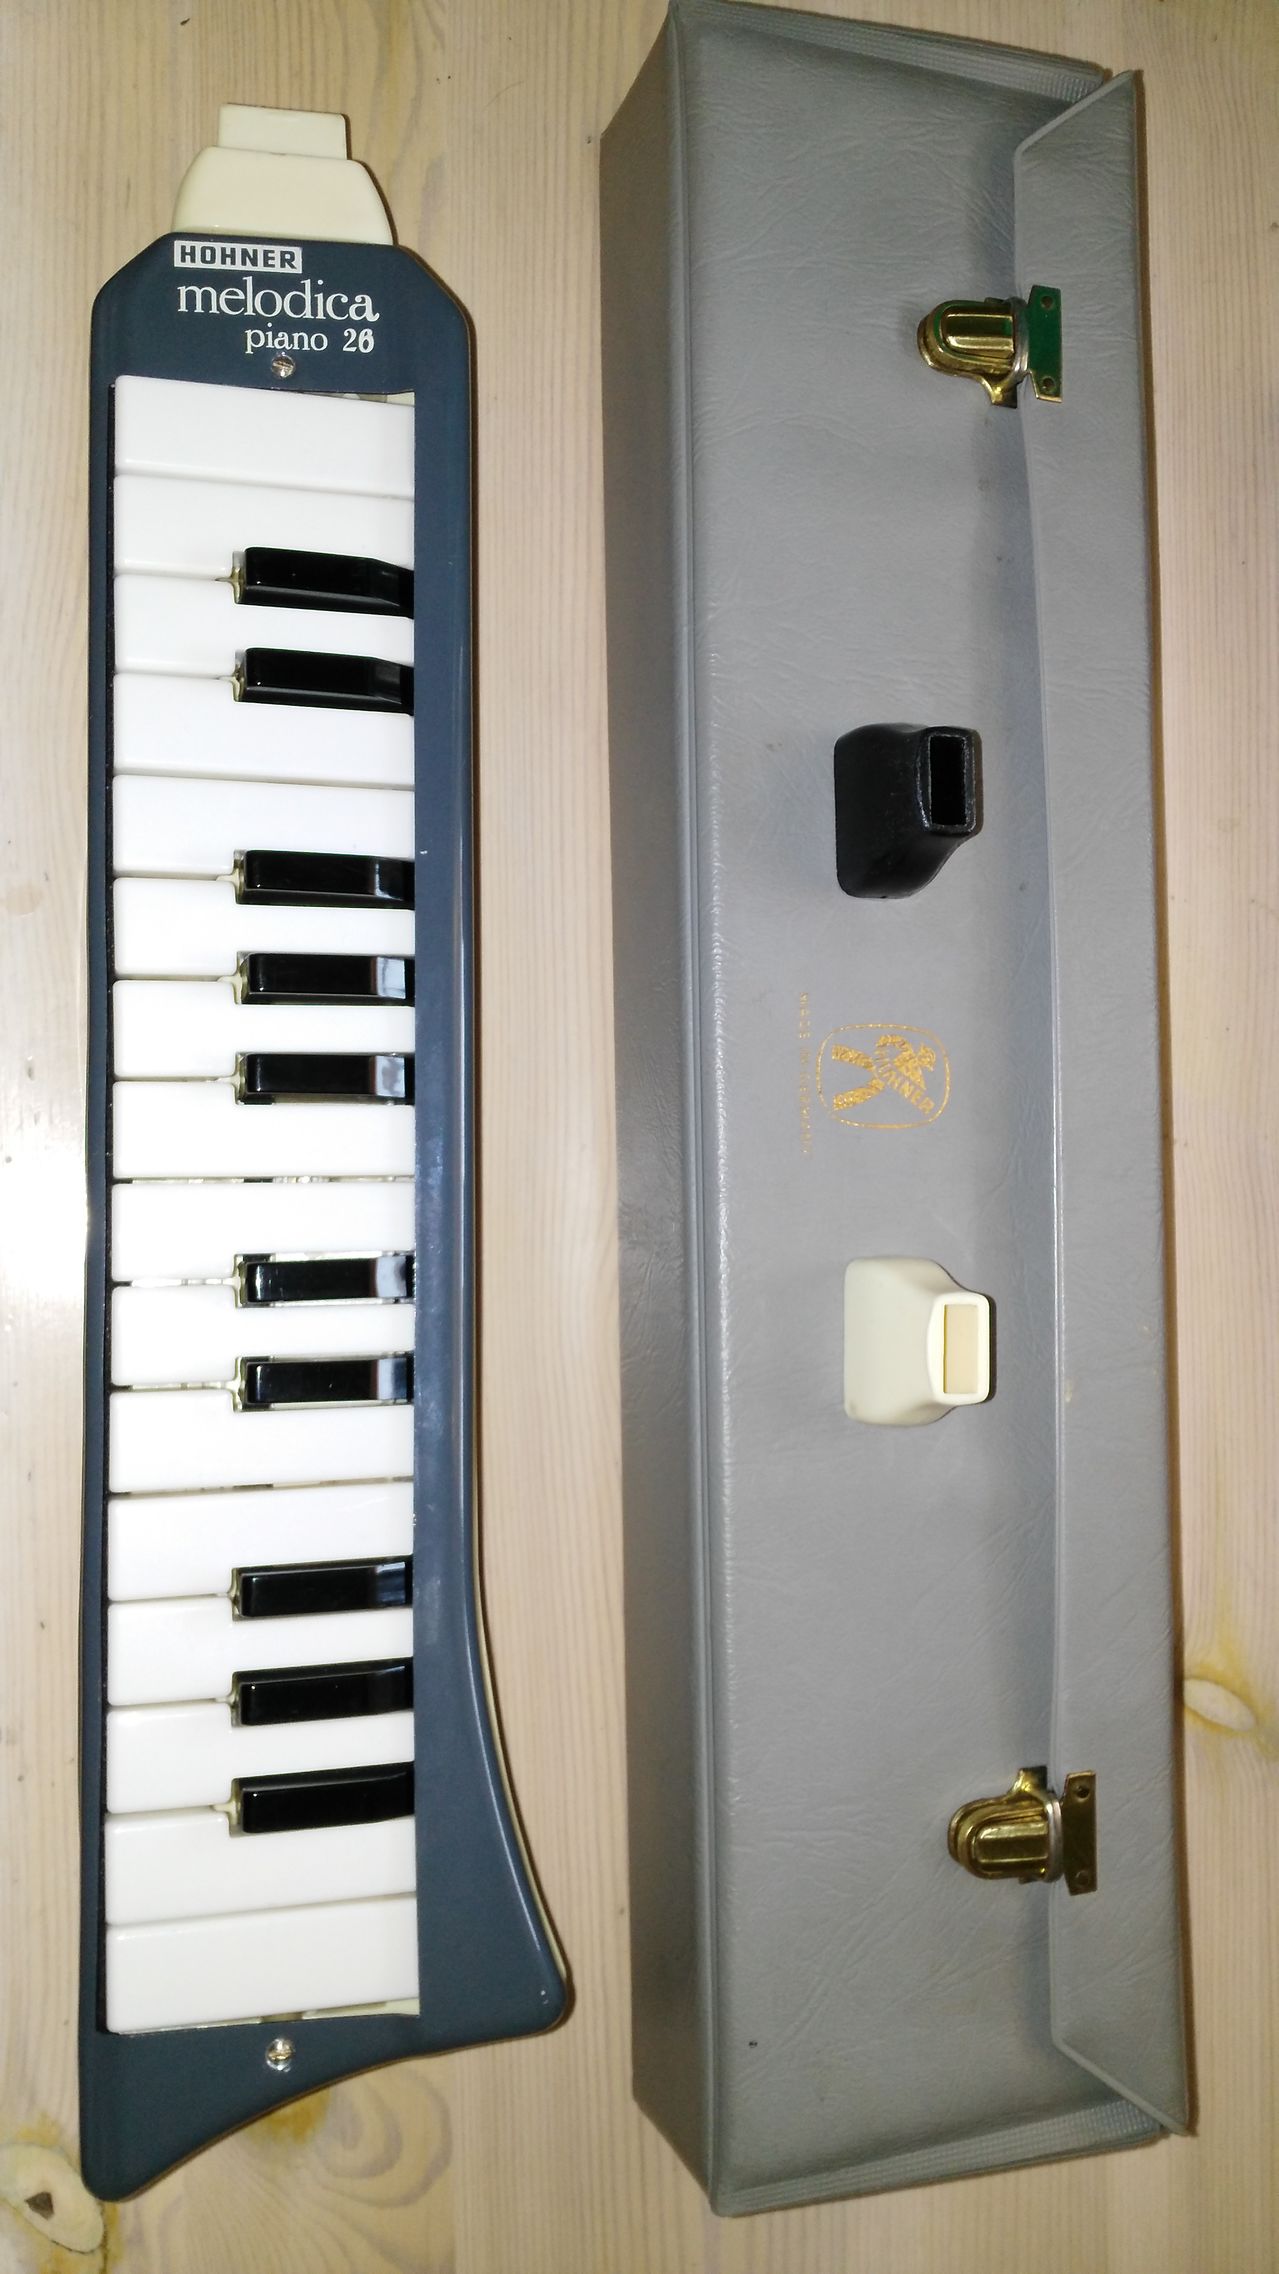 Hohner Piano 26